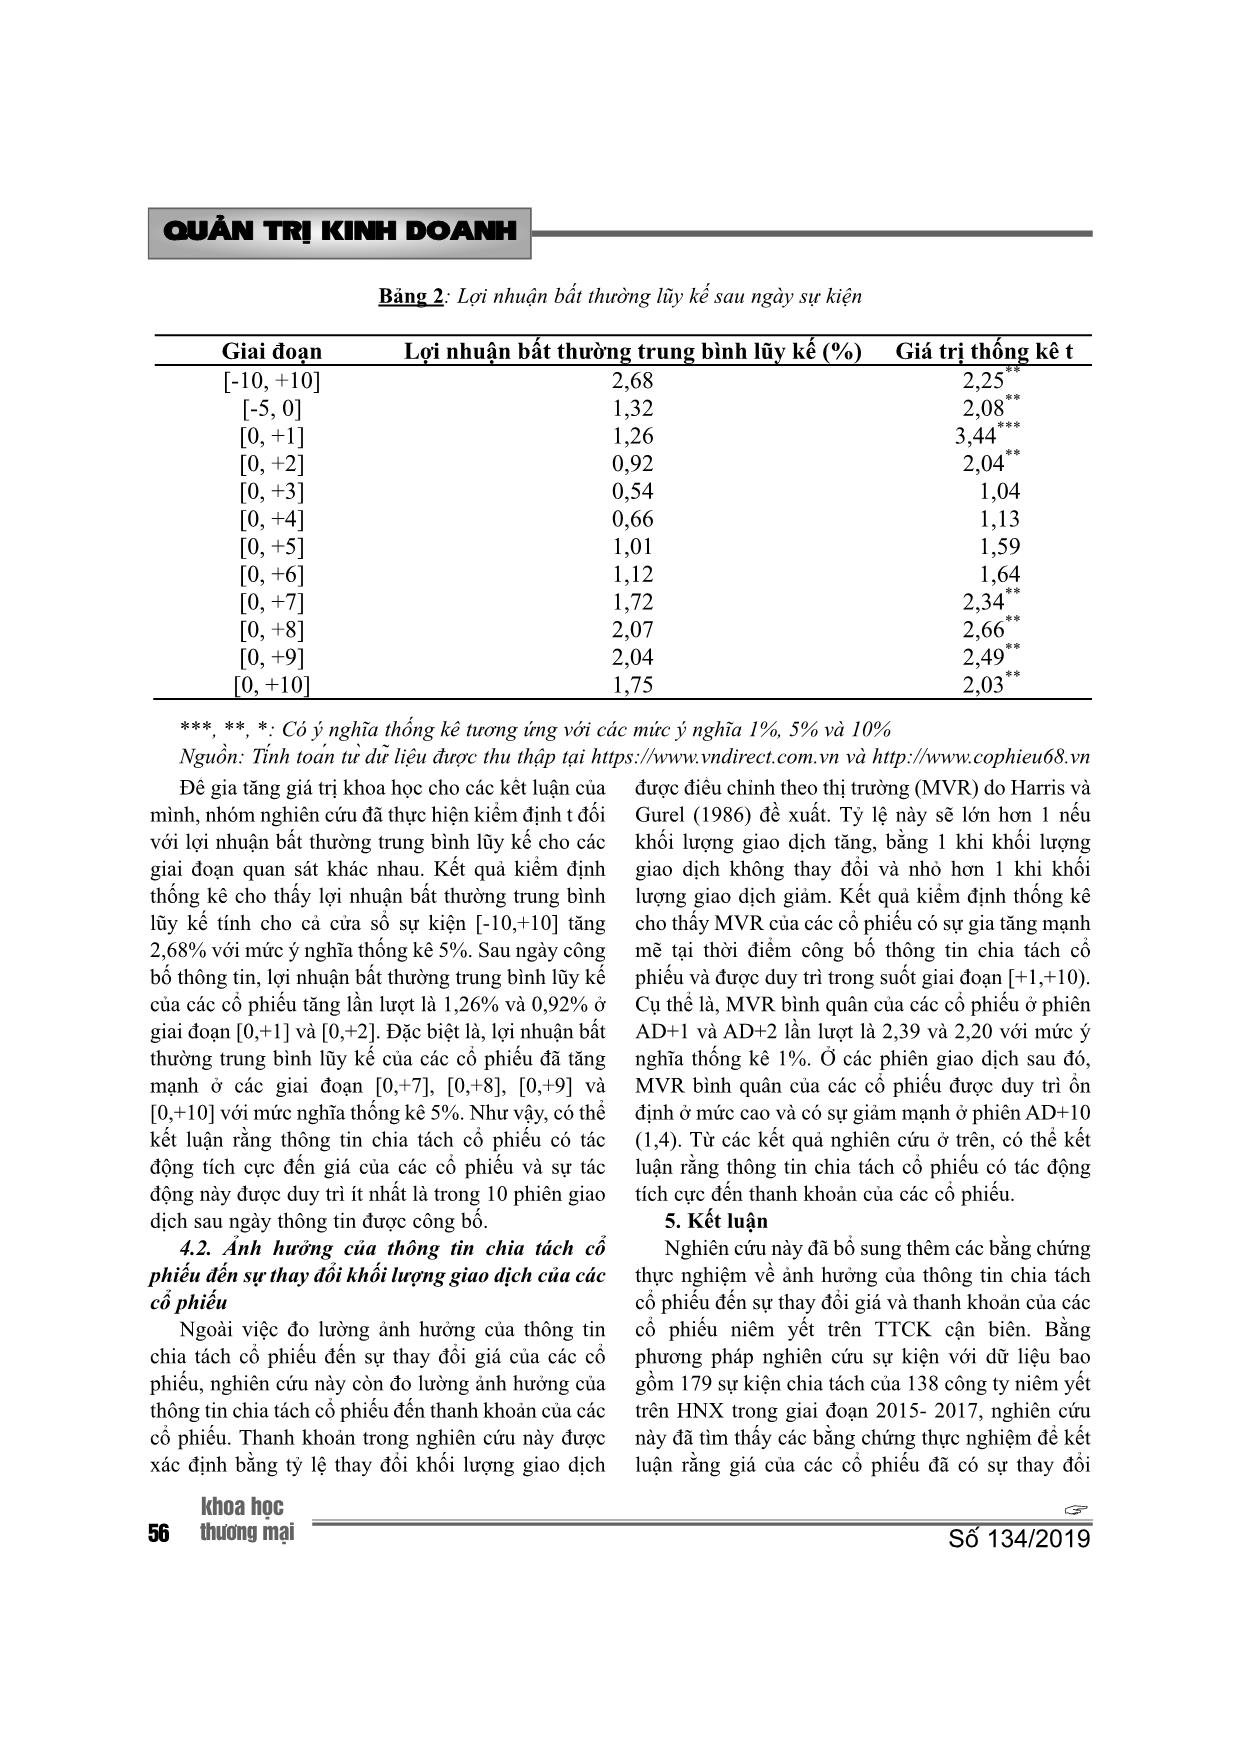 Ảnh hưởng của thông tin chia tách cổ phiếu đến sự thay đổi giá và thanh khoản của các cổ phiếu: bằng chứng thực nghiệm từ sở giao dịch chứng khoán Hà Nội trang 6